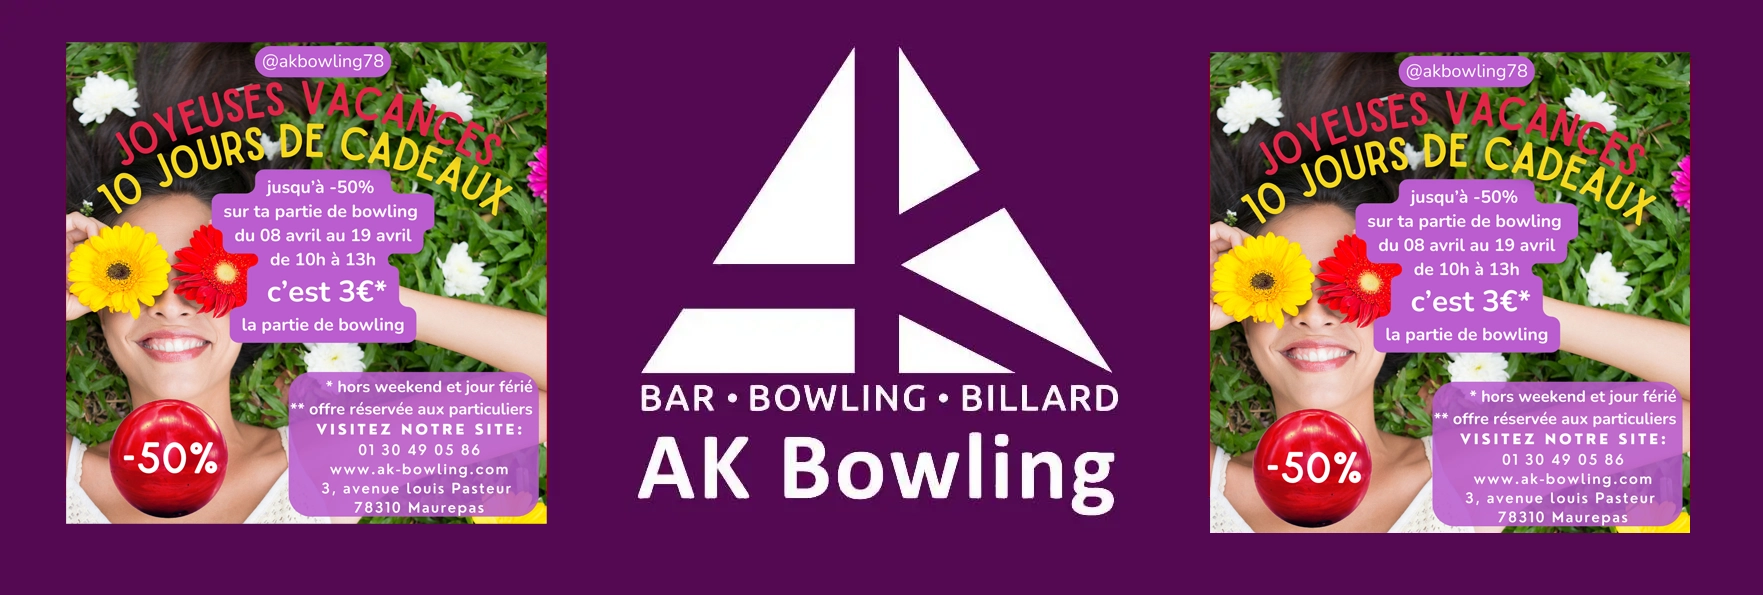 AK Bowling